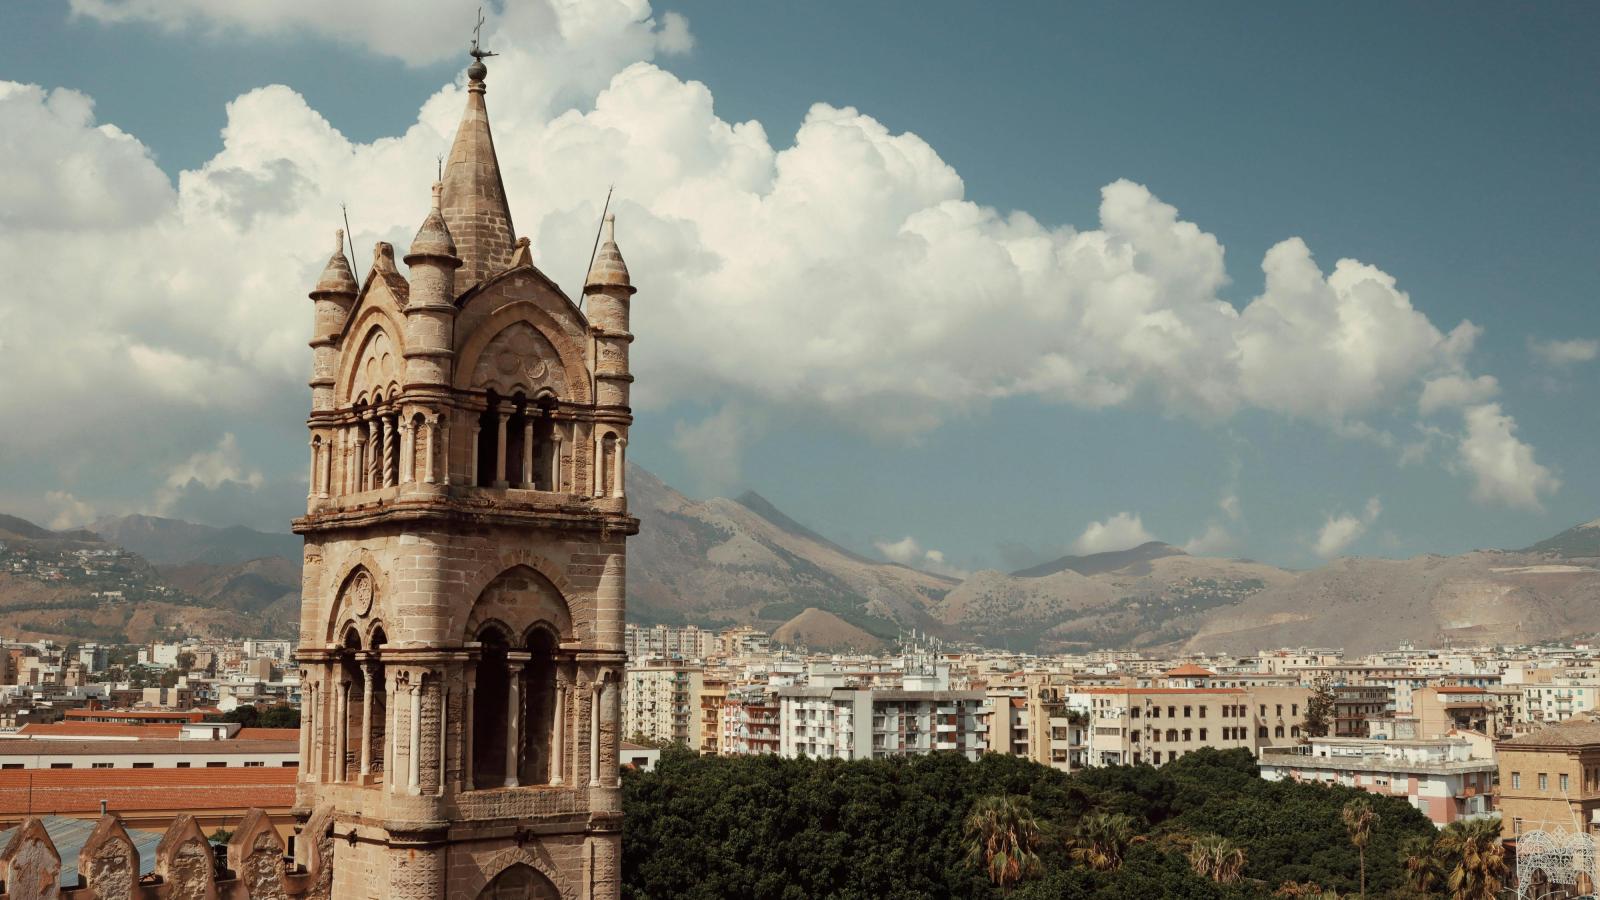 Im Vordergrund auf der linken Seite des Bildes ist ein alter Kirchturm zu sehen - er ist aus hellem Stein. Im Hintergrund ist ein weiter Blick über die Dächer von Palermo. Hinter den Gebäuden ragen Berge in die Höhe.